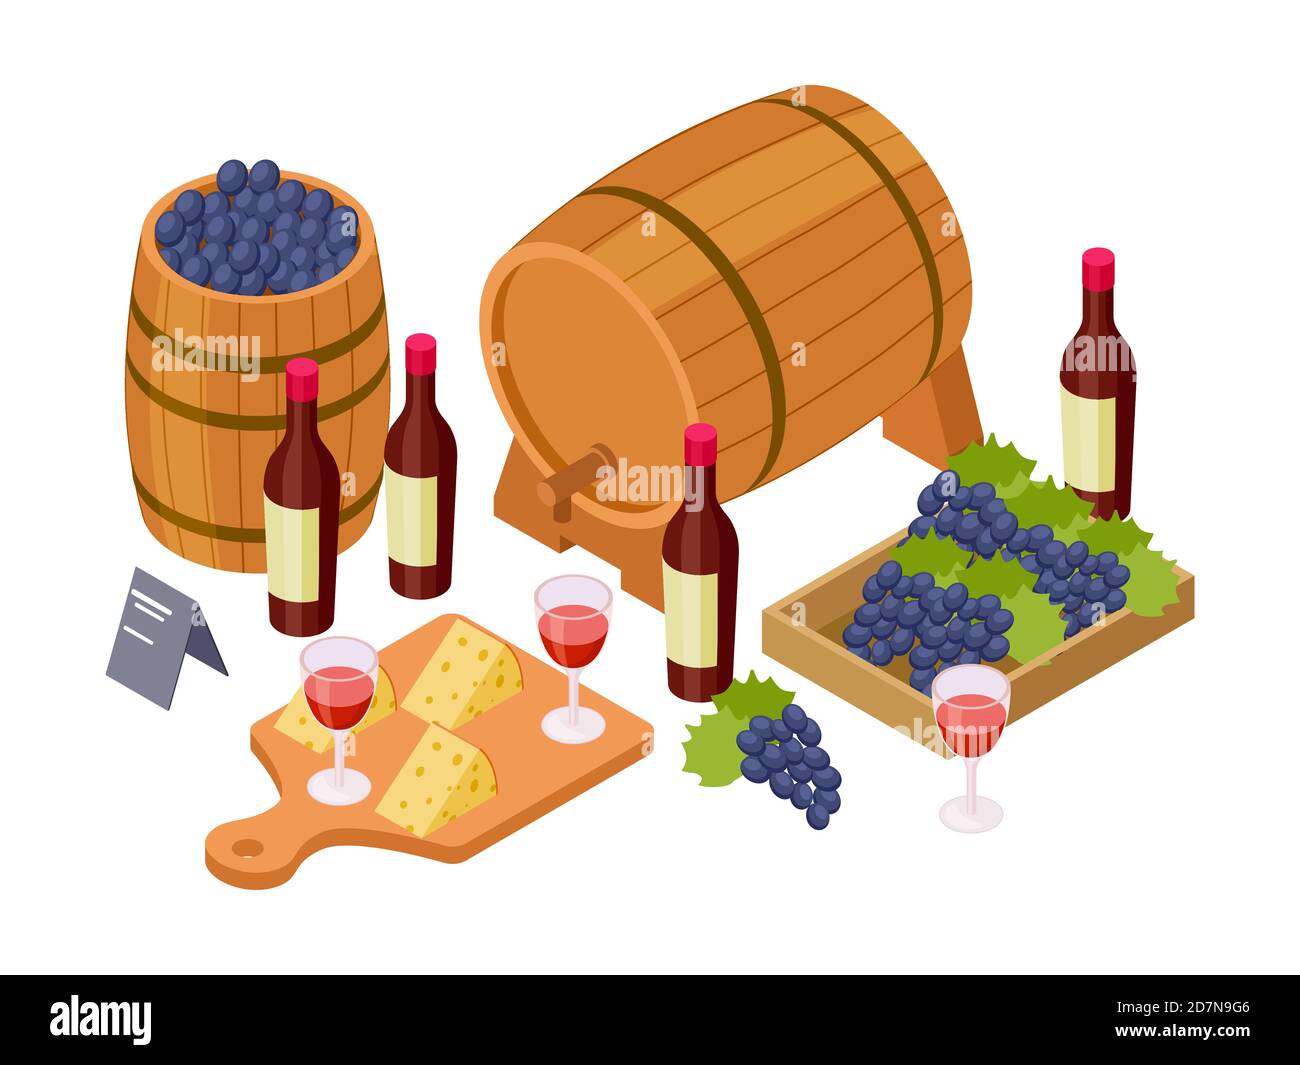 Concetto di degustazione di vini. Vino isometrico, botti di legno, bicchieri, uva. Illustrazione del vino vettoriale. Vino, barile e bottiglia, degustazione di alcol a base di uva Illustrazione Vettoriale